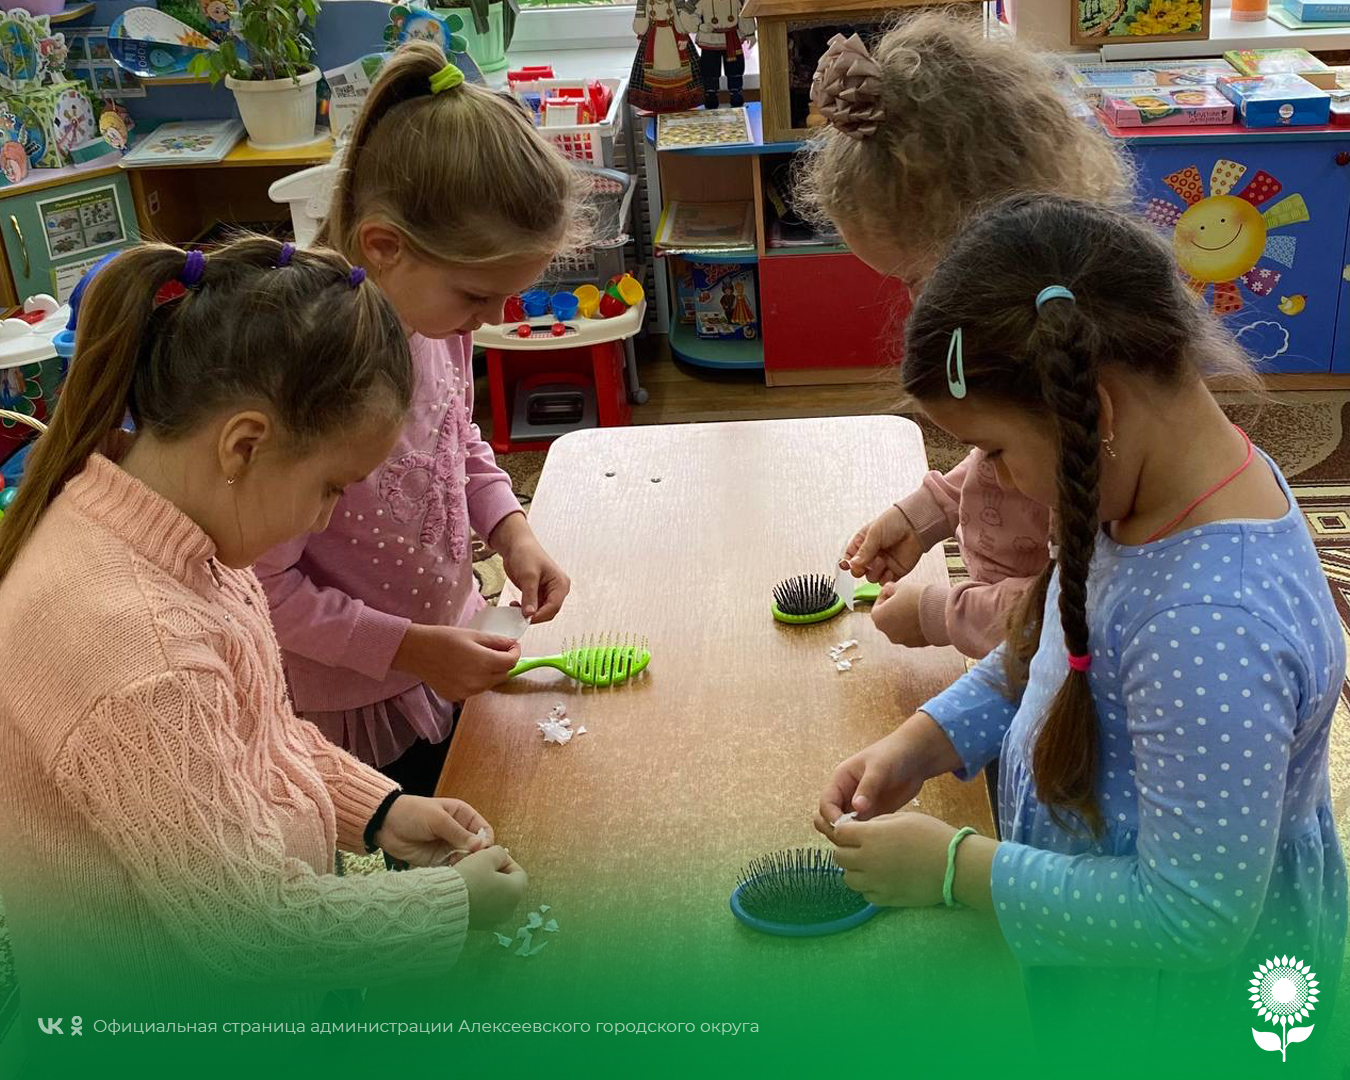 В рамках Международного дня энергосбережения в детских садах Алексеевского городского округа прошли мероприятия по экономии электричества, тепла и воды.